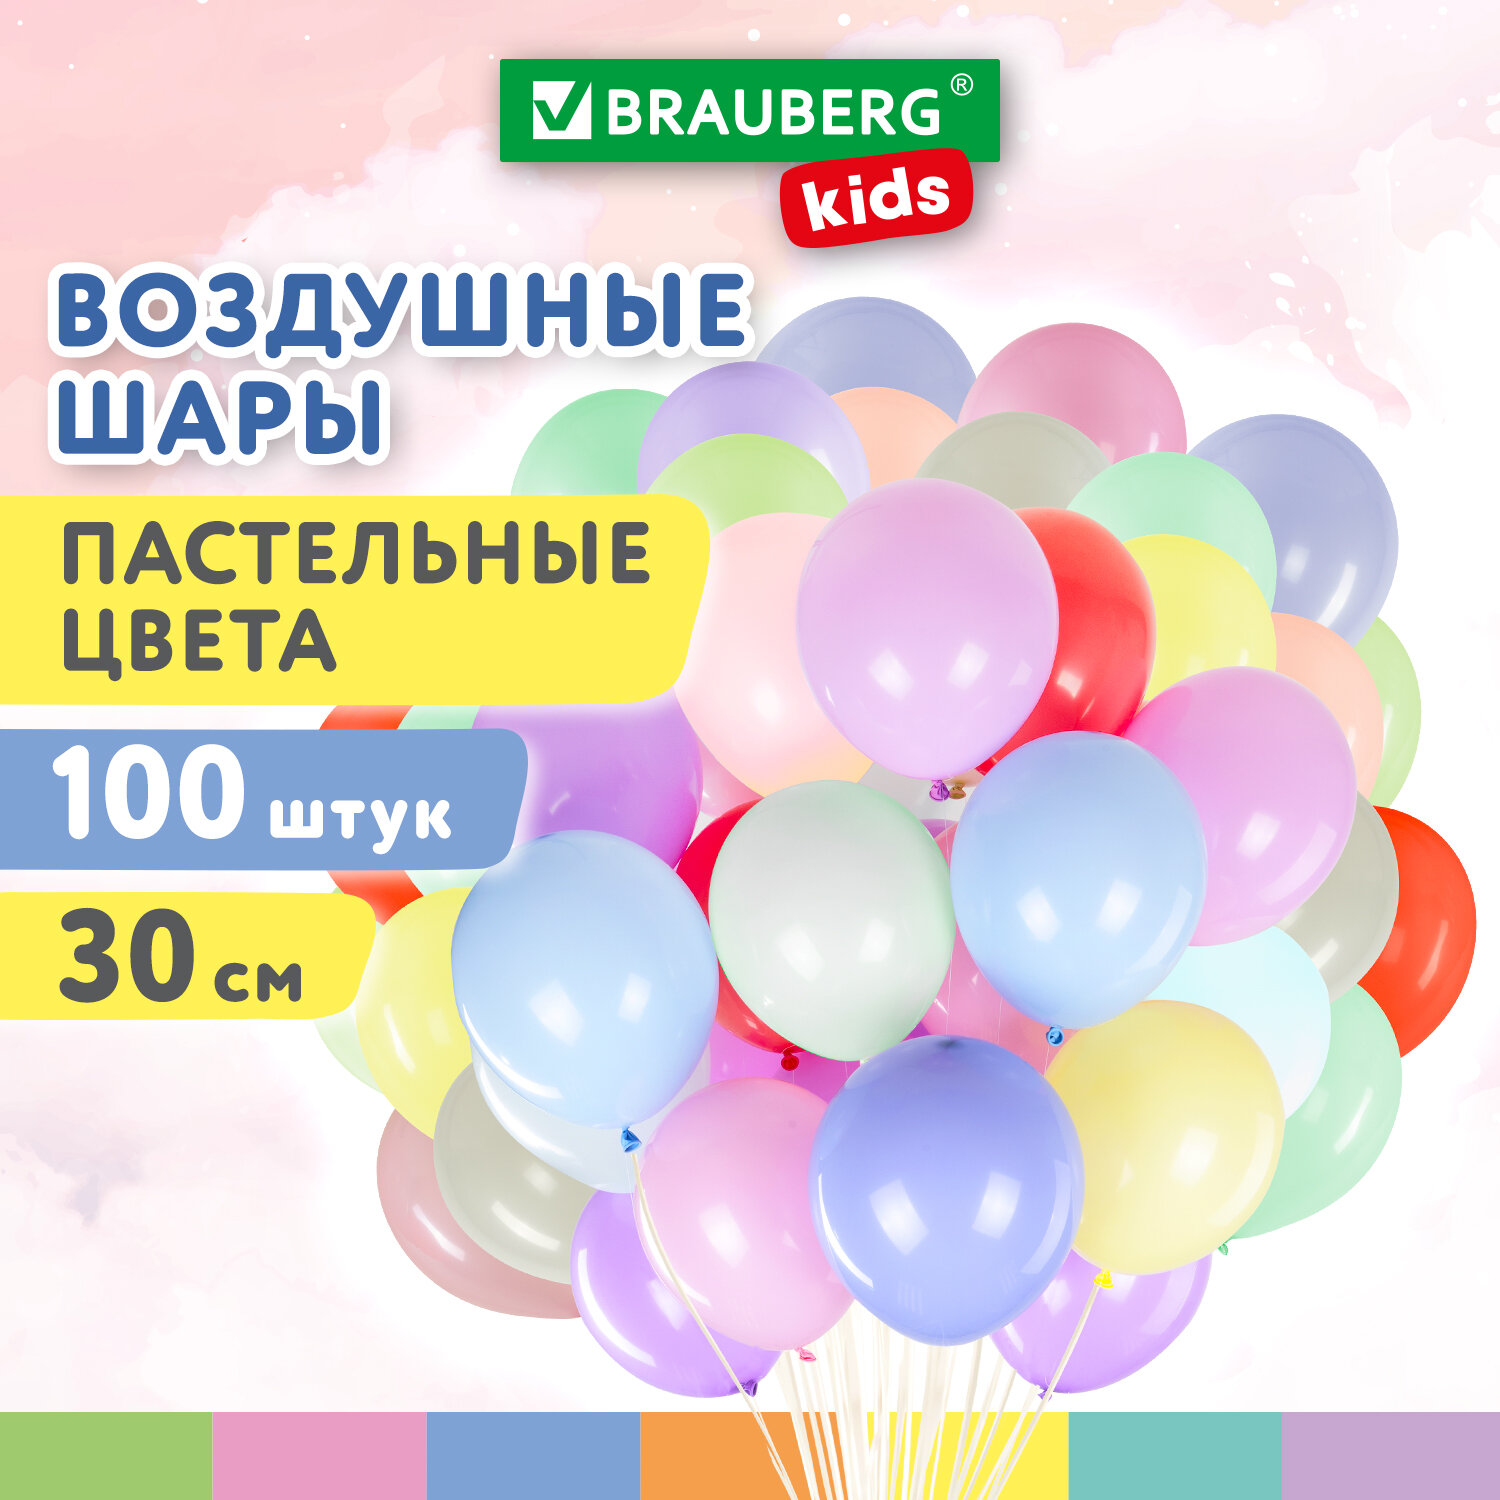 Шарики воздушные Brauberg Kids 591879 набор на день рождения, для фотозоны, 30 см, 100 шт воздушные шары для фотозоны